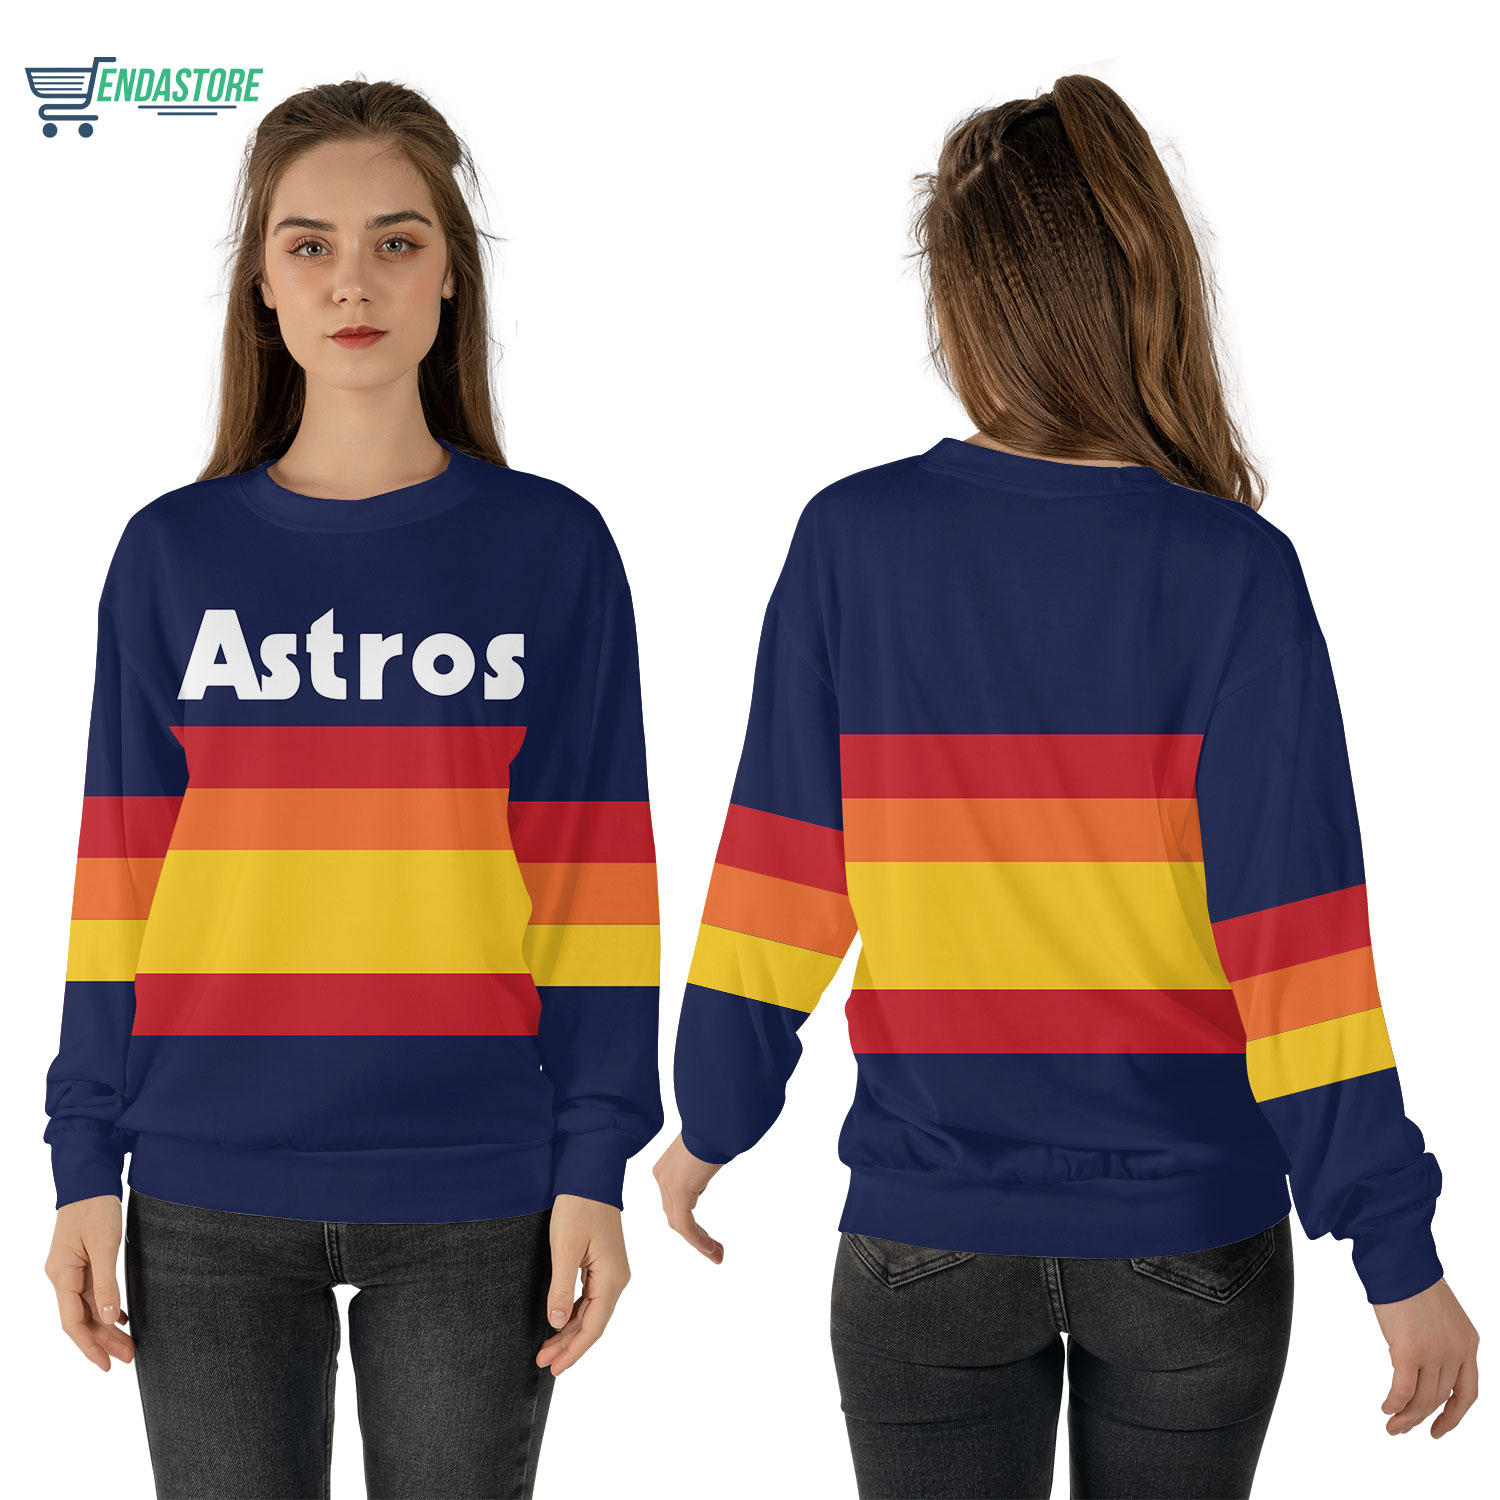 Endastore Kate Upton Astros Christmas Sweater